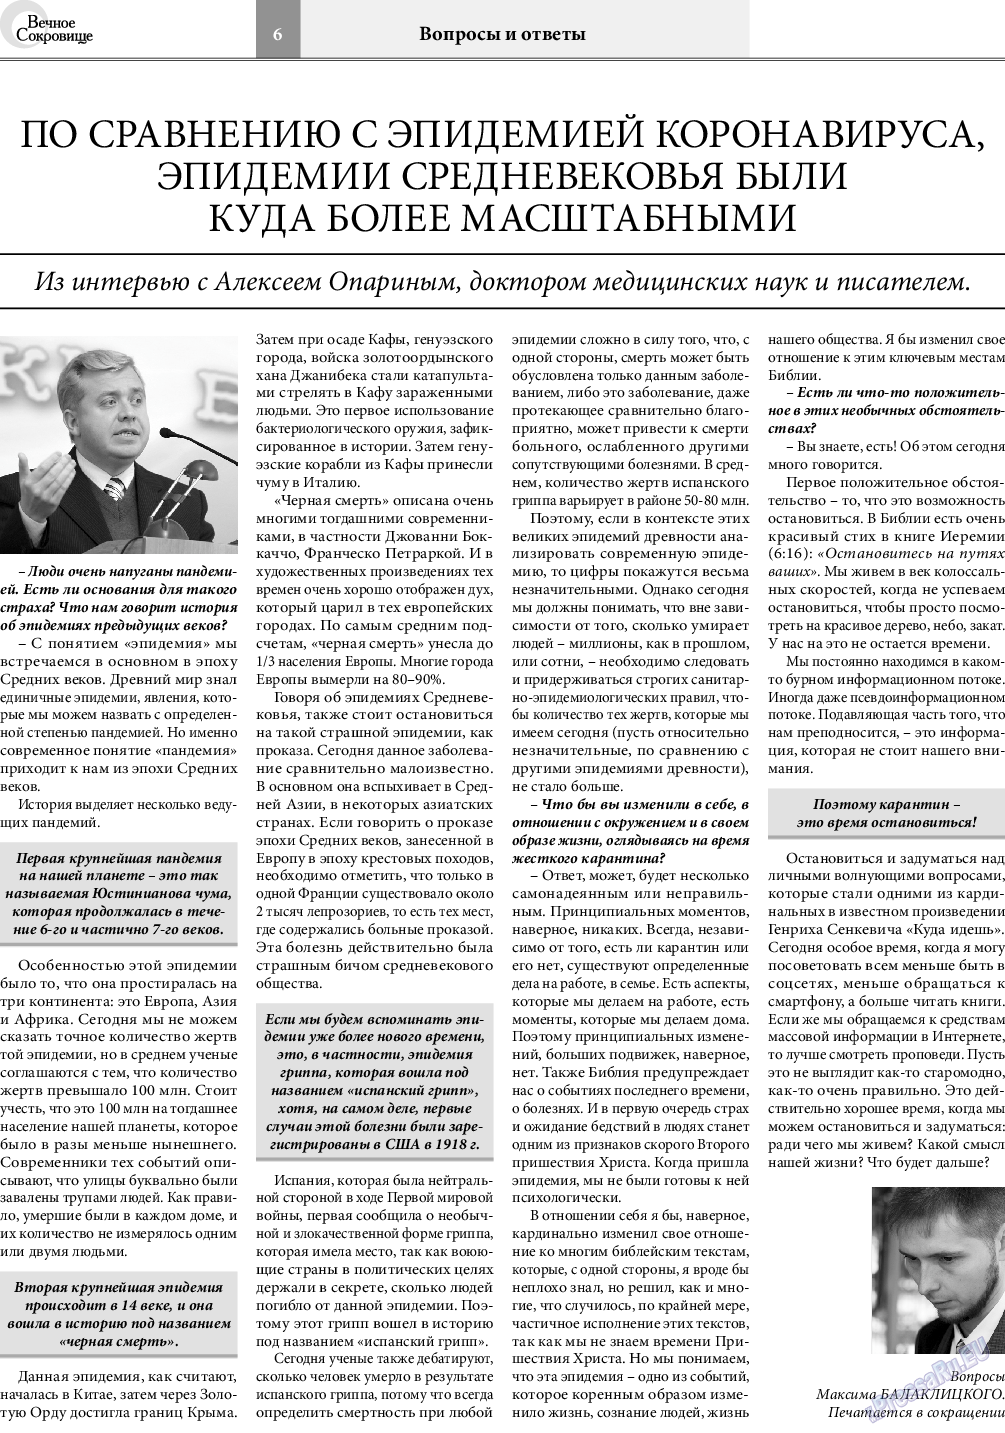 Вечное сокровище, газета. 2020 №5 стр.6